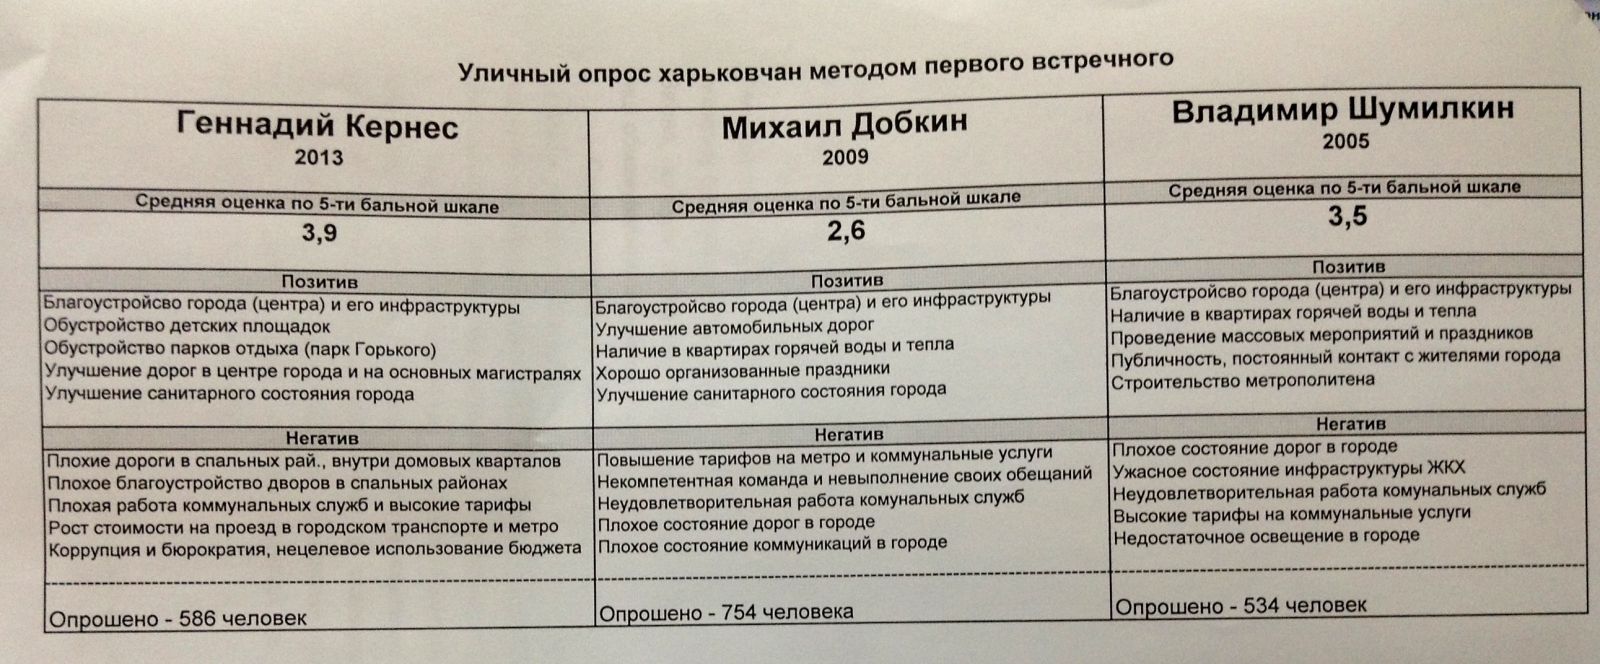 Из пресс-релиза областного отделения Комитета избирателей Украины